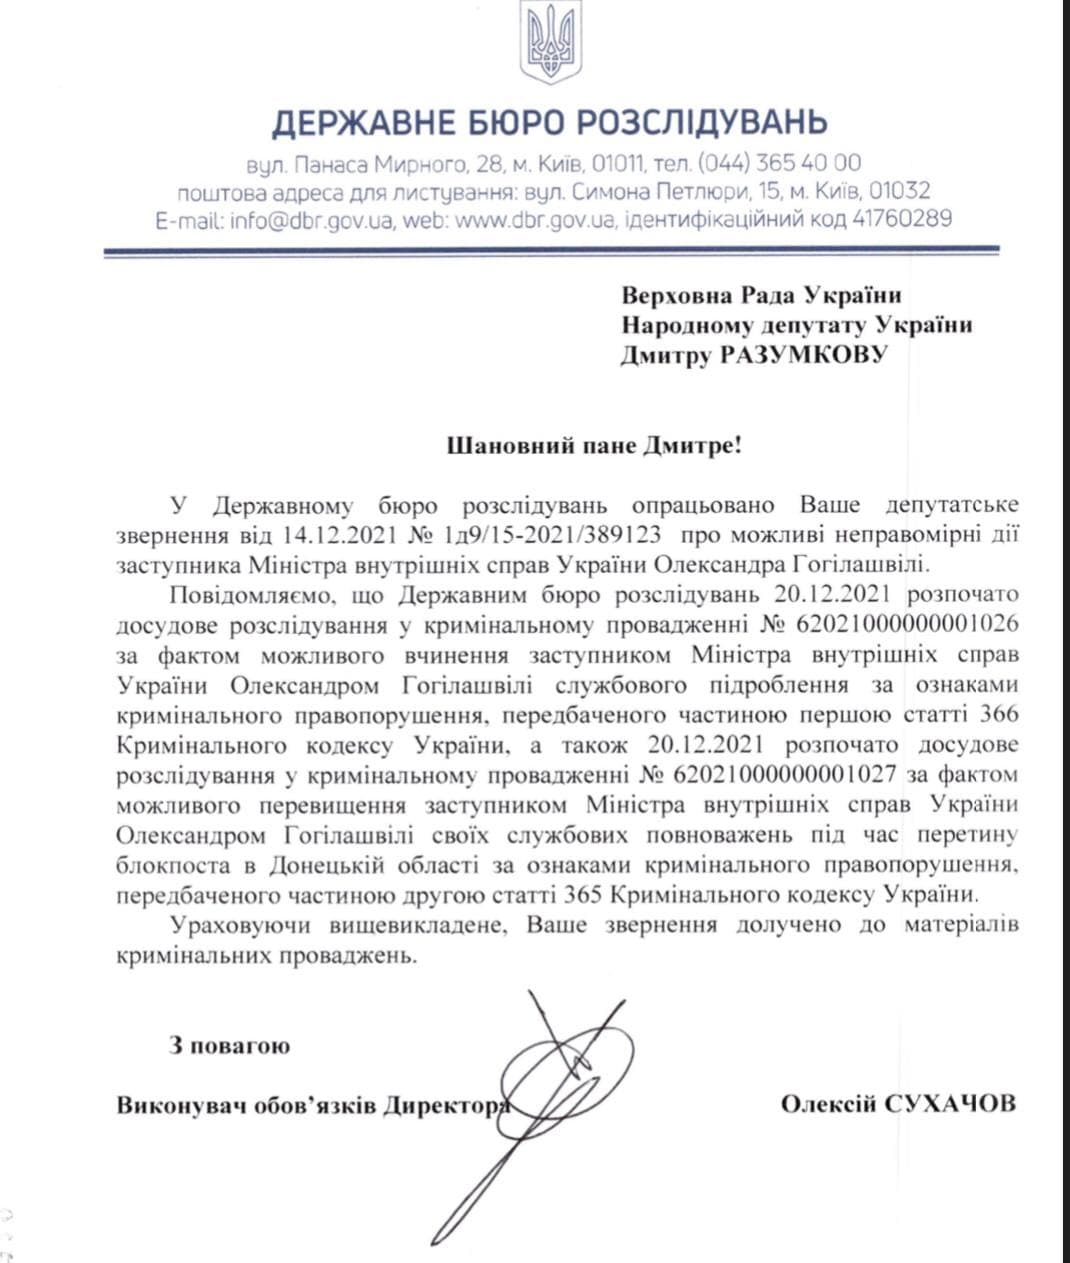 ГБР открыло уголовное производство в отношении бывшего замглавы МВД Гогилашвили